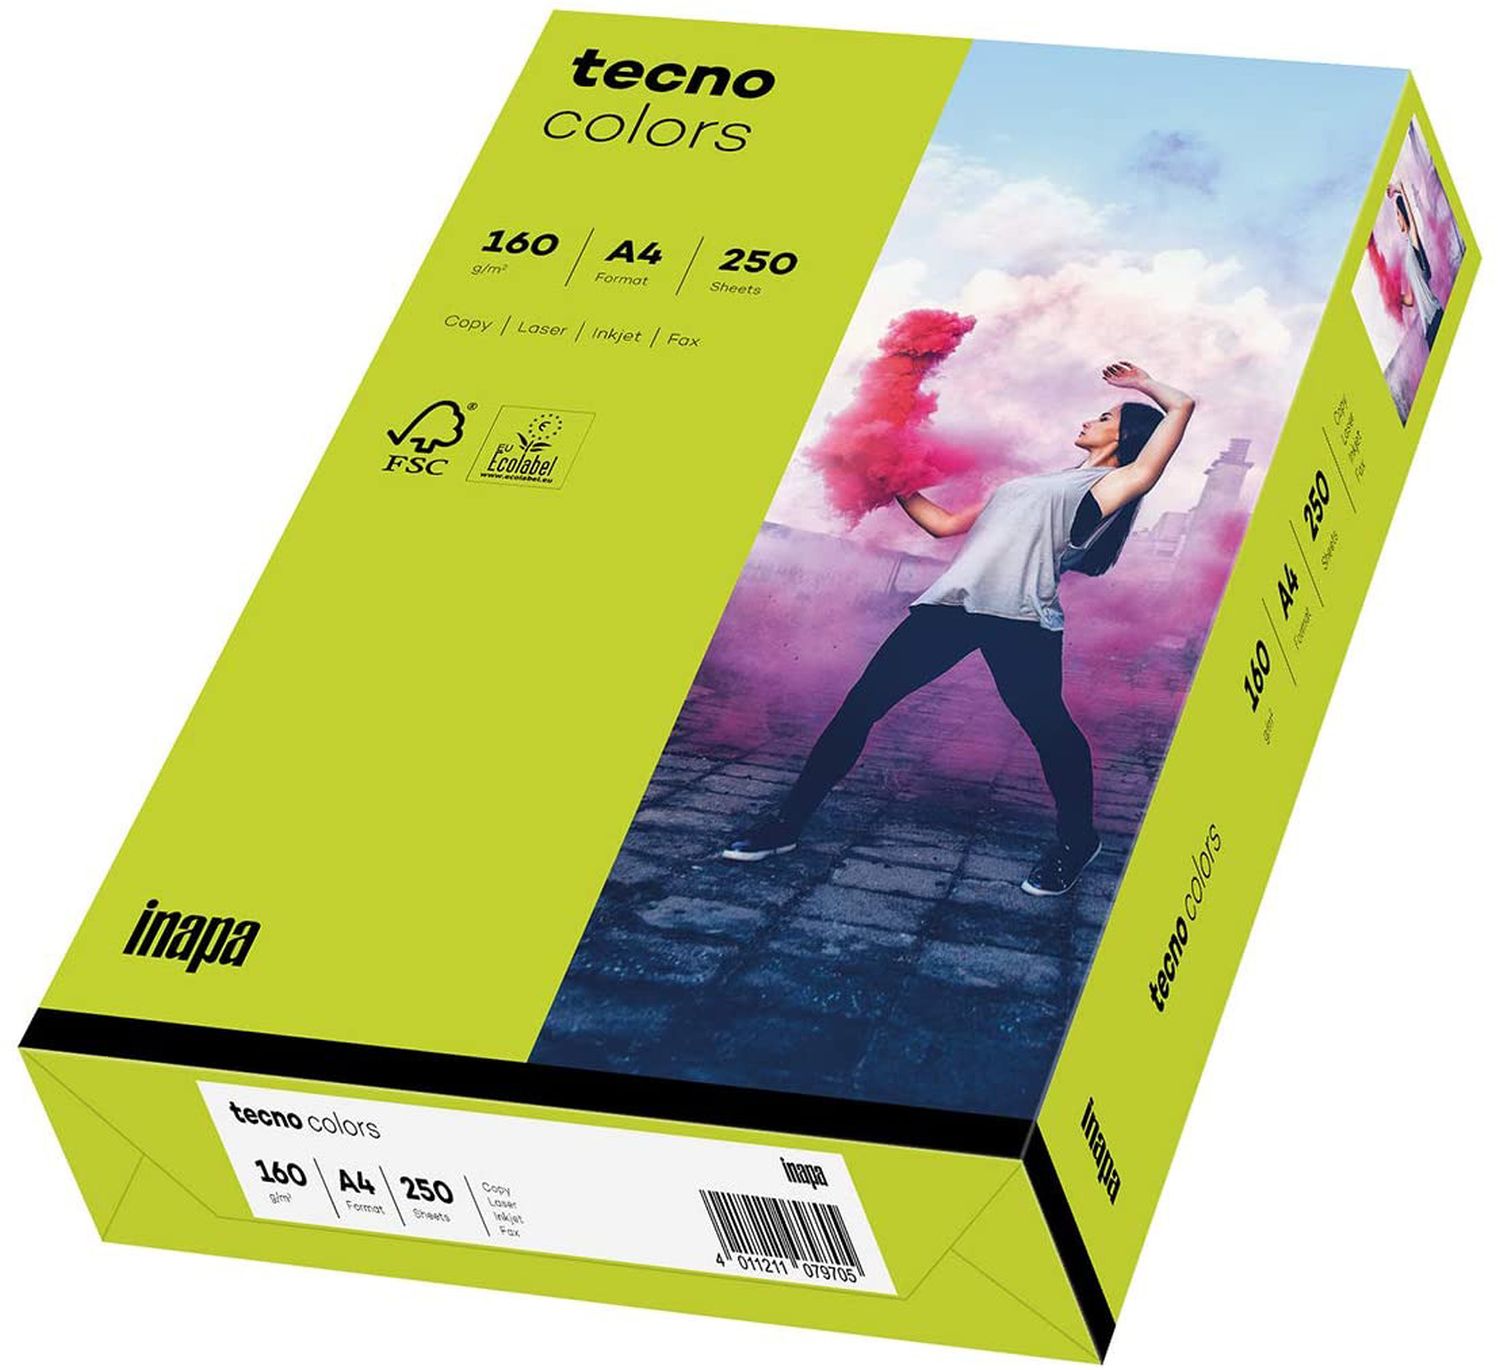 Kopierpapier Inapa tecno® colors 2100011370 DIN A4, 160 g/qm, pastellhellgrün, pastell, 250 Blatt